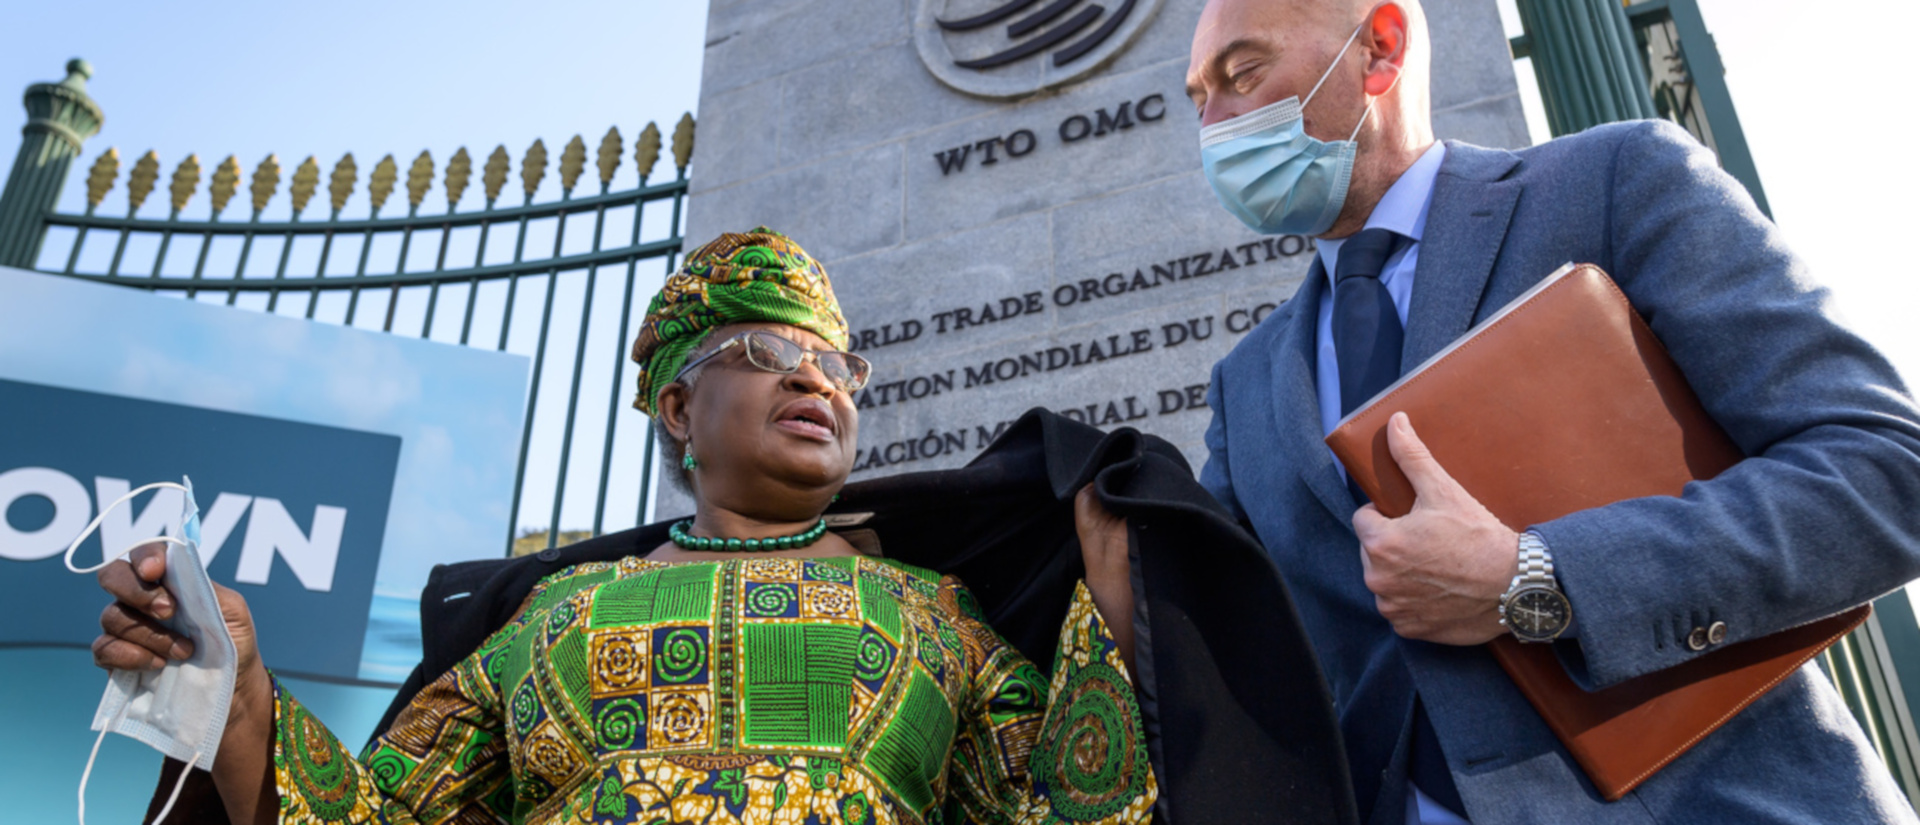 Die neue WTO-Generaldirektorin Ngozi Okonjo-Iweala vor dem Hauptsitz der Organisation in Genf